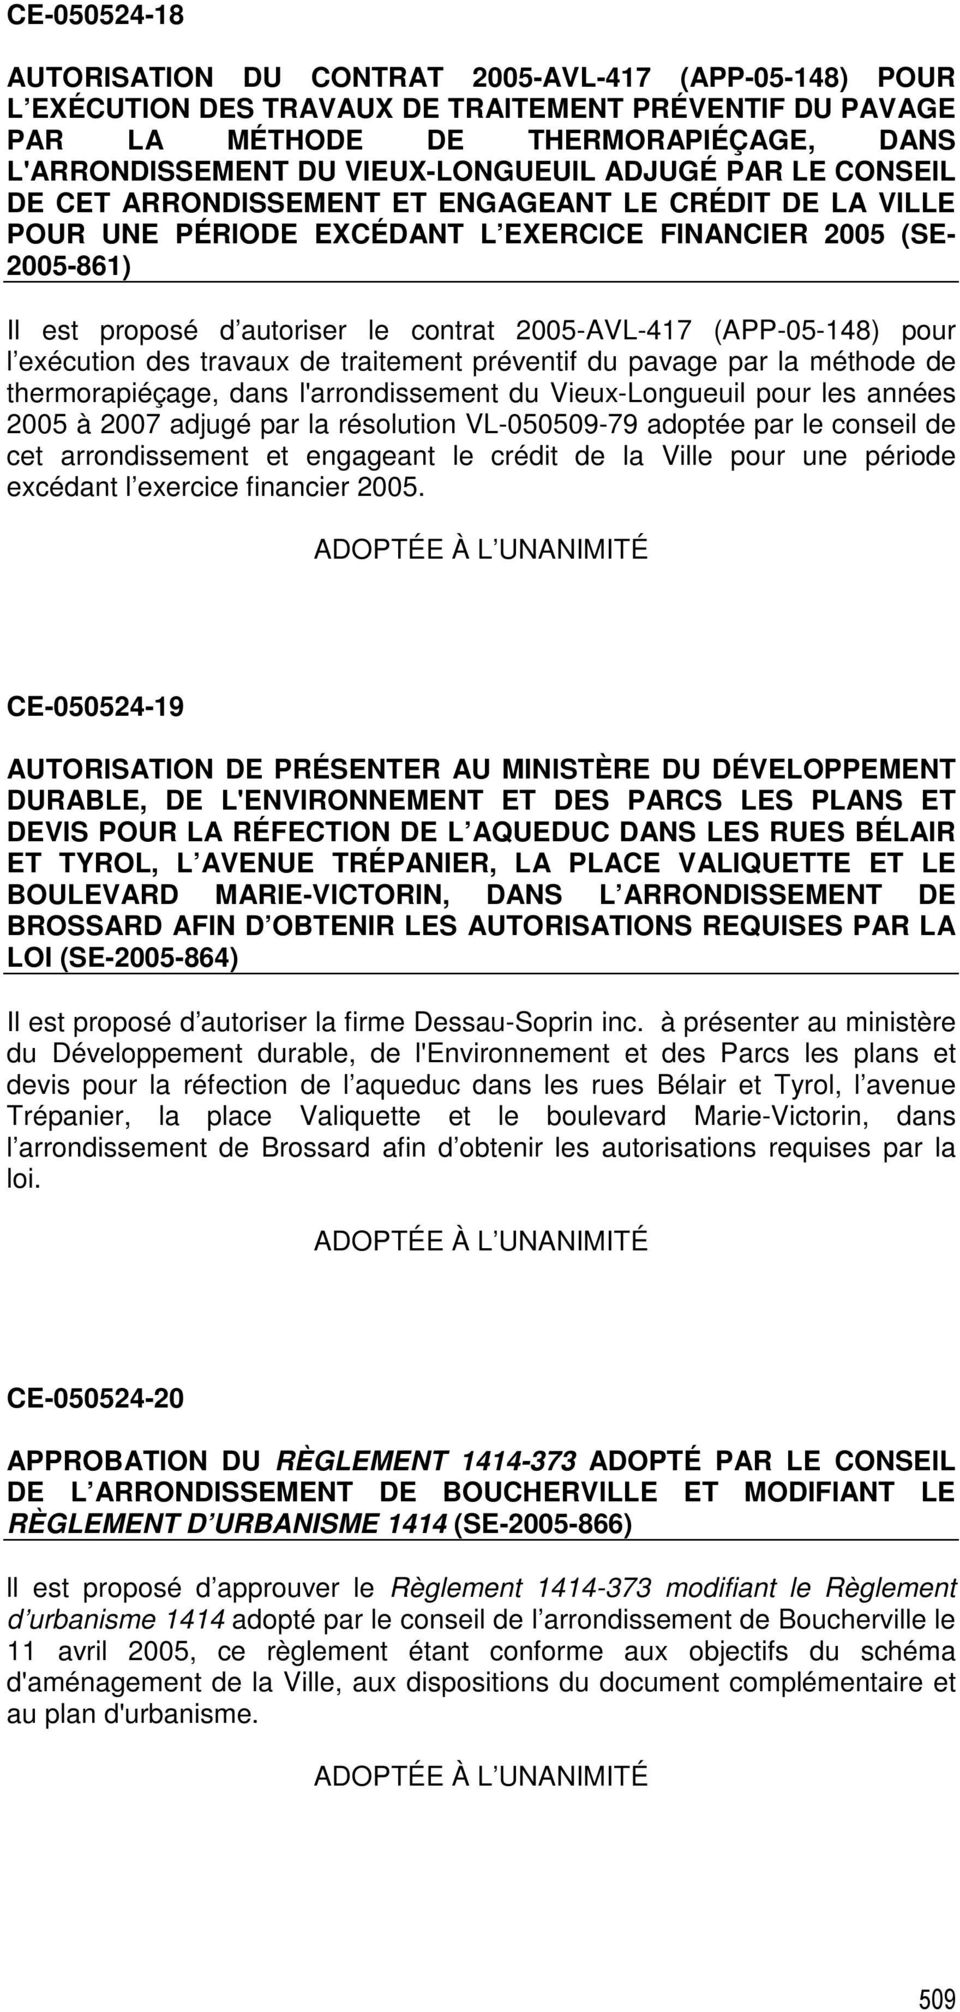 2005-AVL-417 (APP-05-148) pour l exécution des travaux de traitement préventif du pavage par la méthode de thermorapiéçage, dans l'arrondissement du Vieux-Longueuil pour les années 2005 à 2007 adjugé